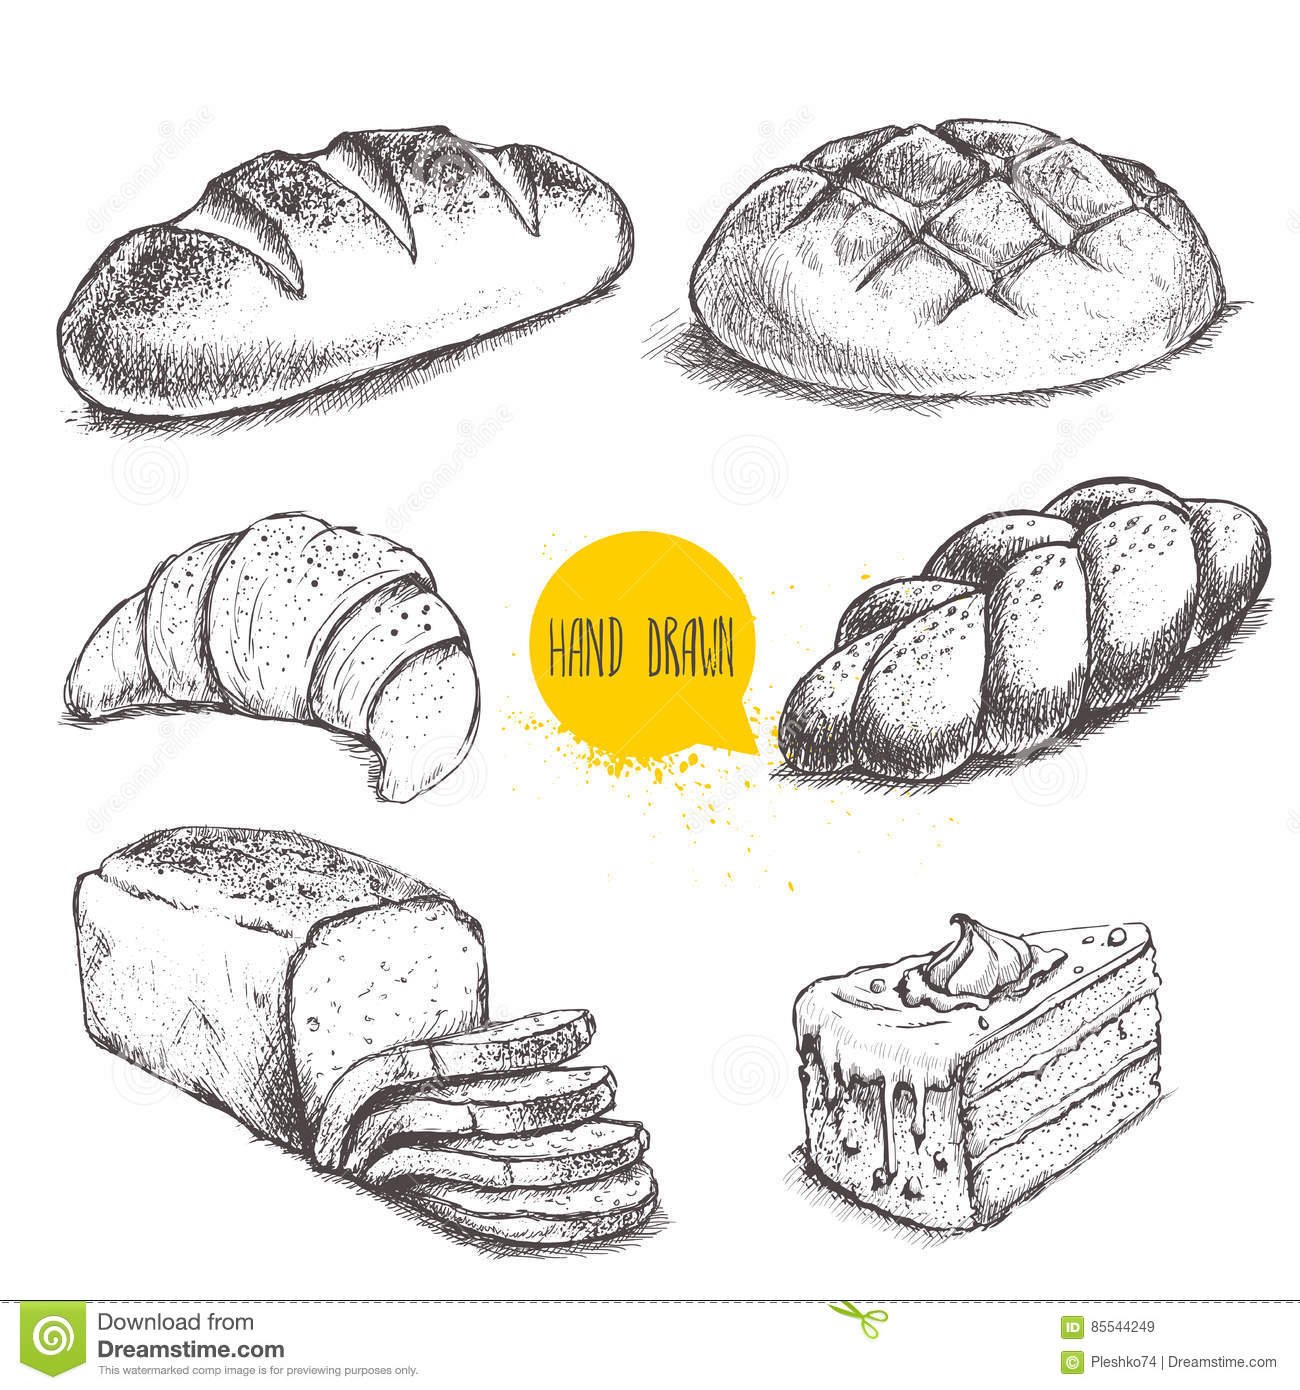 Набросок хлеба